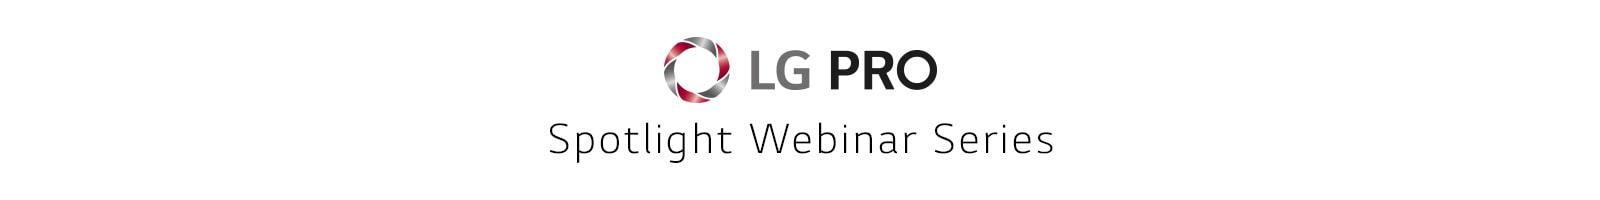 LG PRO Spotlight Webinar Series